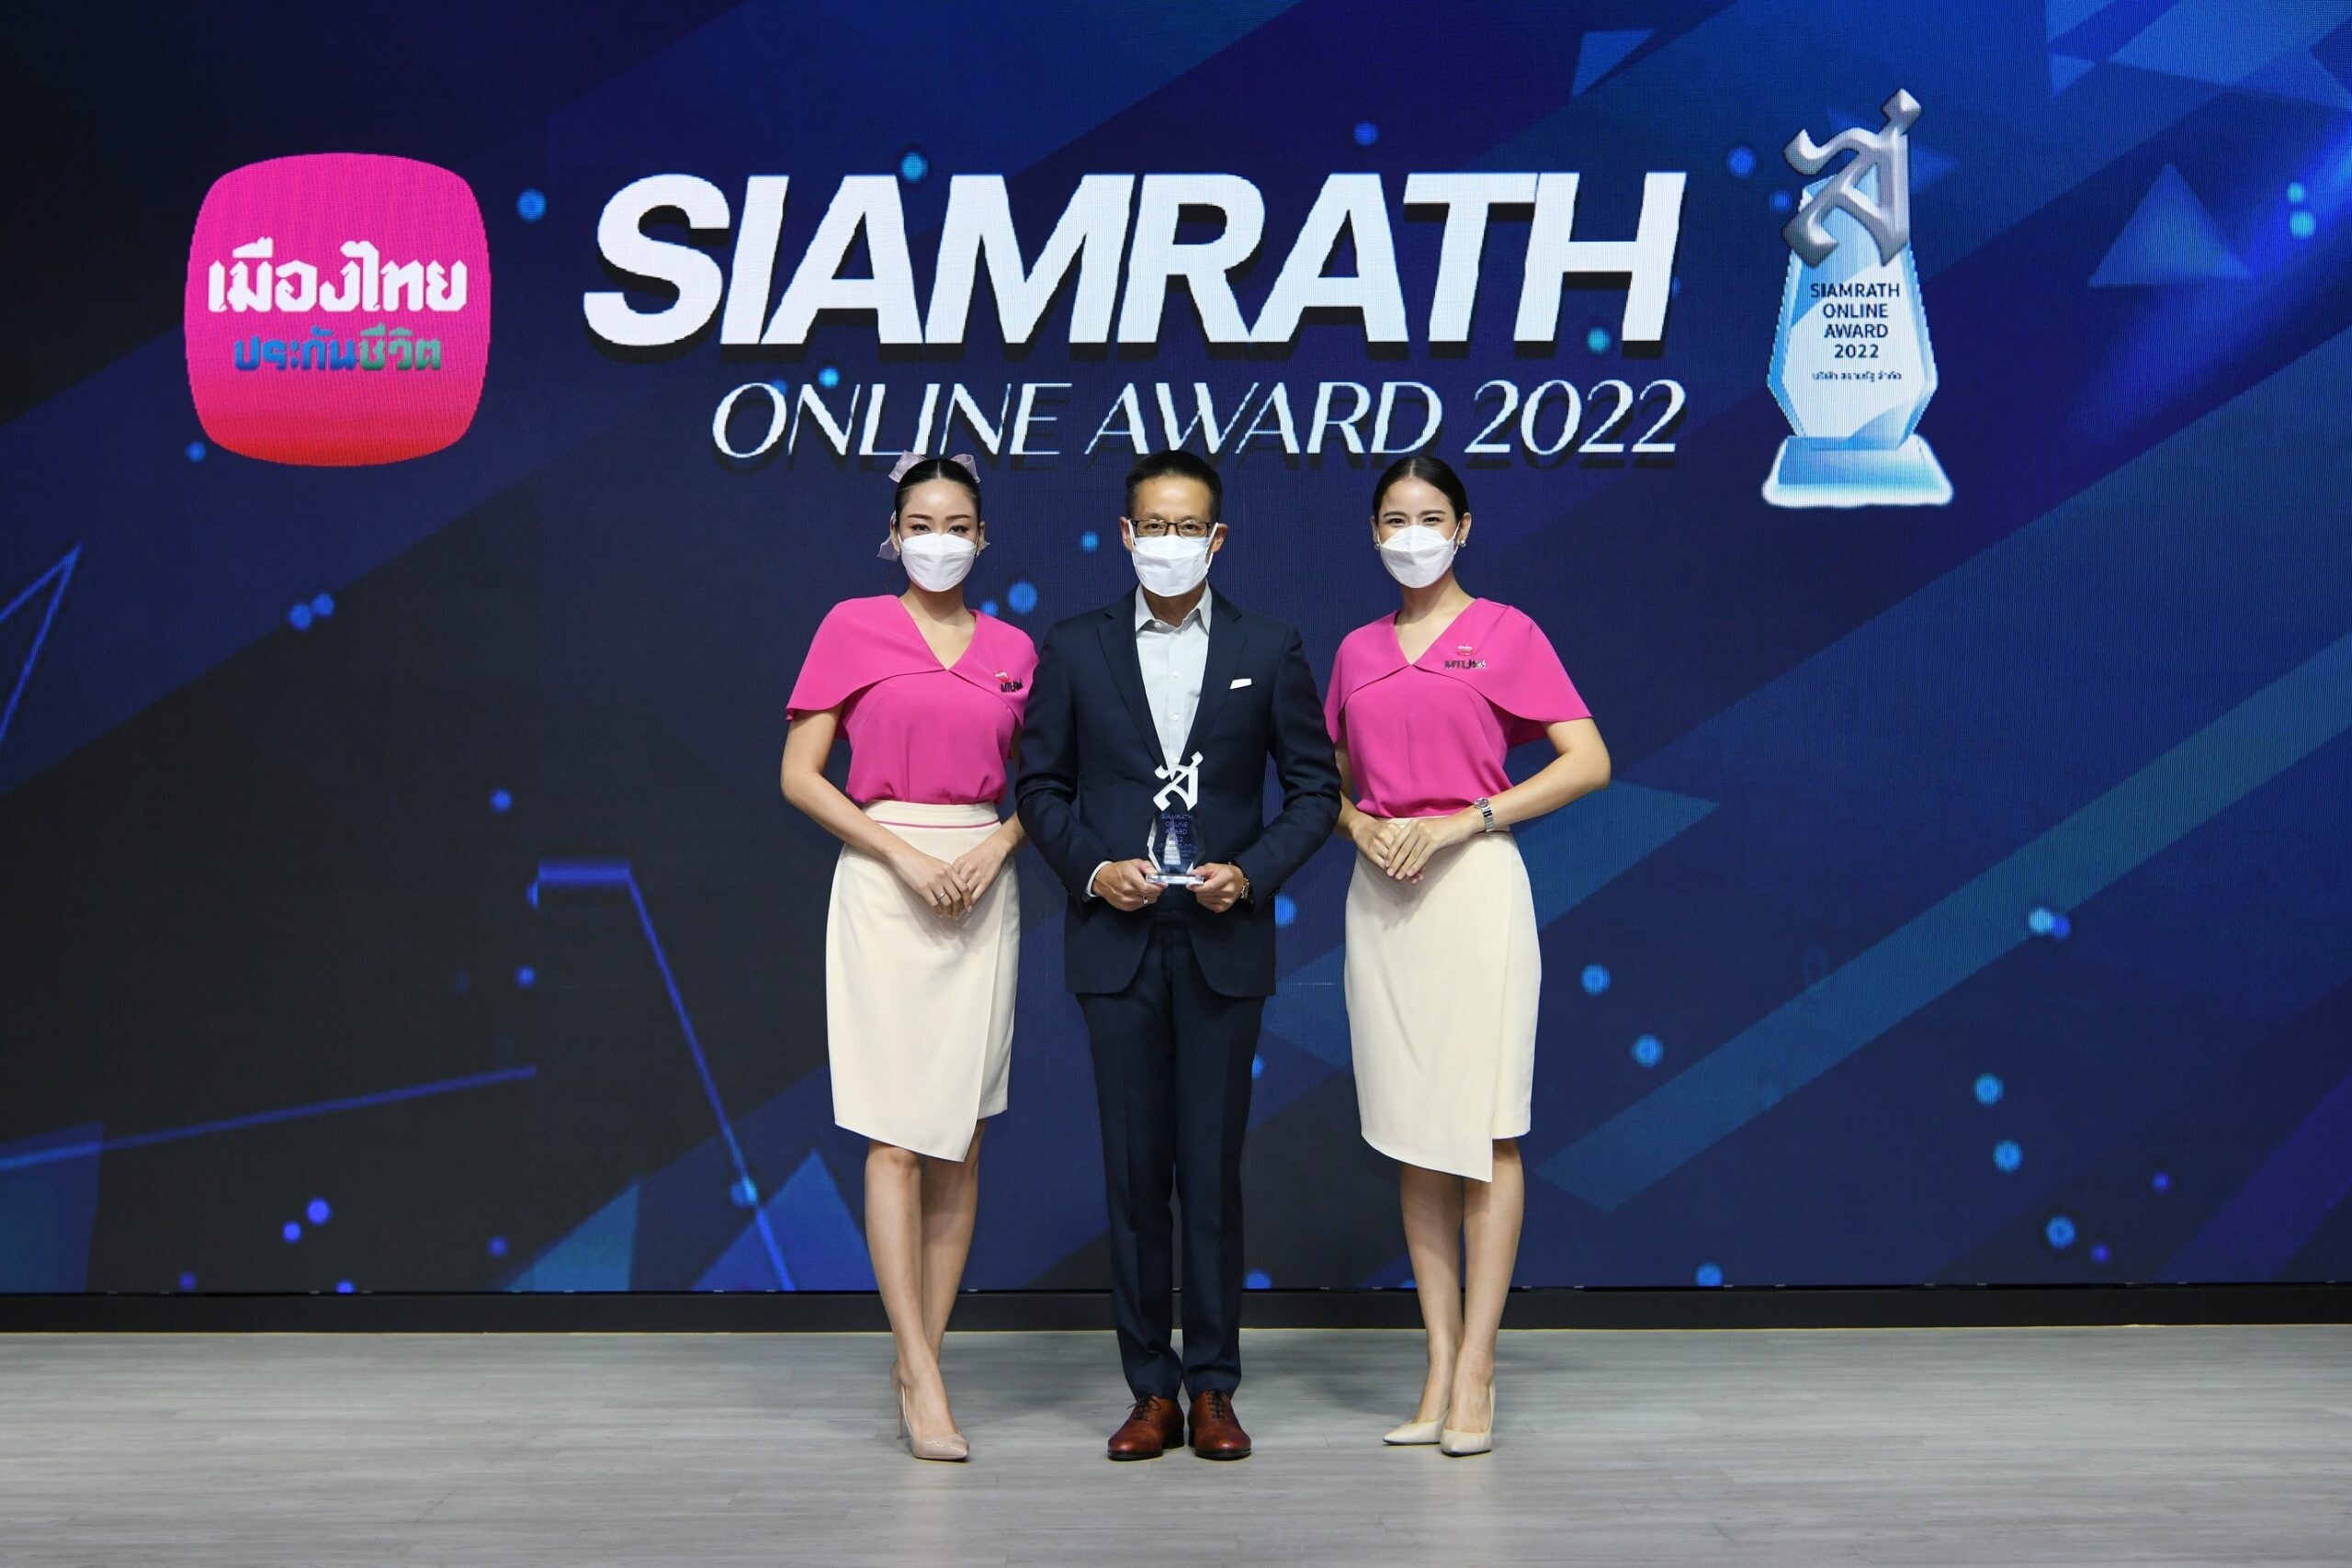 เมืองไทยประกันชีวิต รับรางวัล "SIAMRATH ONLINE AWARD 2022" ประกันชีวิตที่สร้างสรรค์นวัตกรรมด้านผลิตภัณฑ์และบริการดีเด่น ต่อเนื่องเป็นปีที่ 2